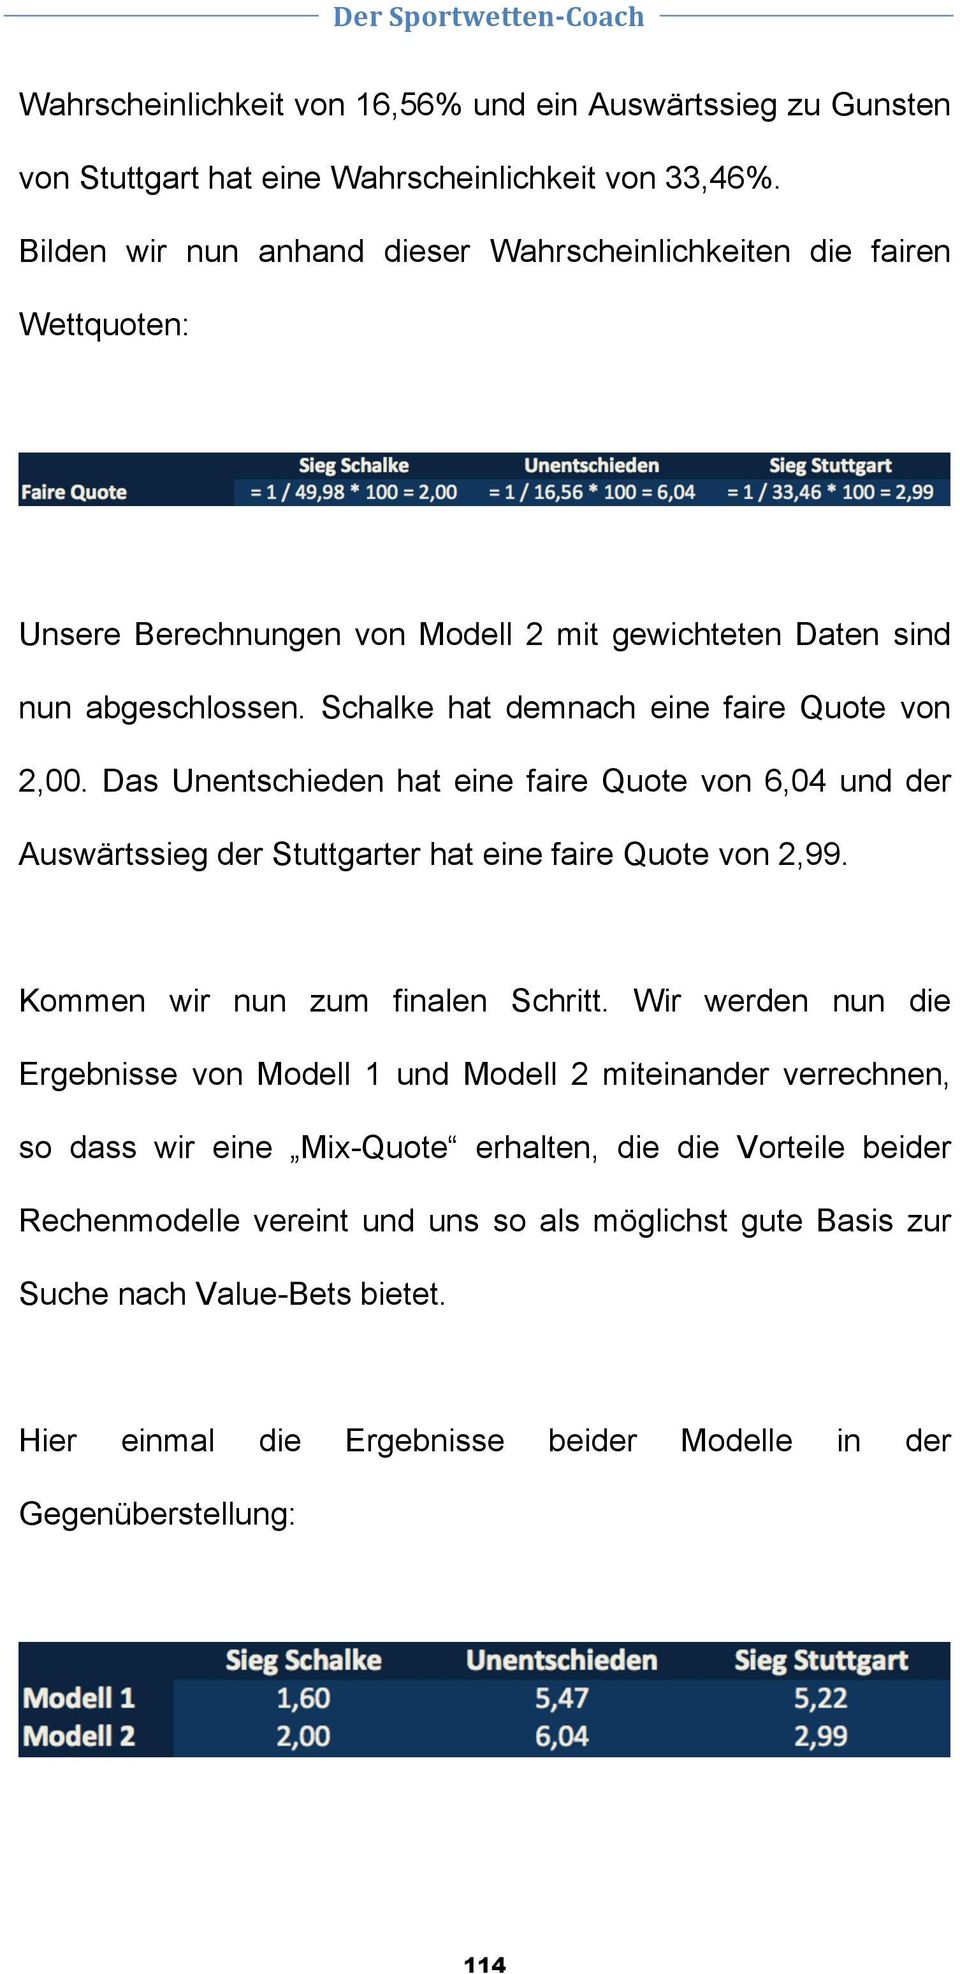 Schalke hat demnach eine faire Quote von 2,00. Das Unentschieden hat eine faire Quote von 6,04 und der Auswärtssieg der Stuttgarter hat eine faire Quote von 2,99.